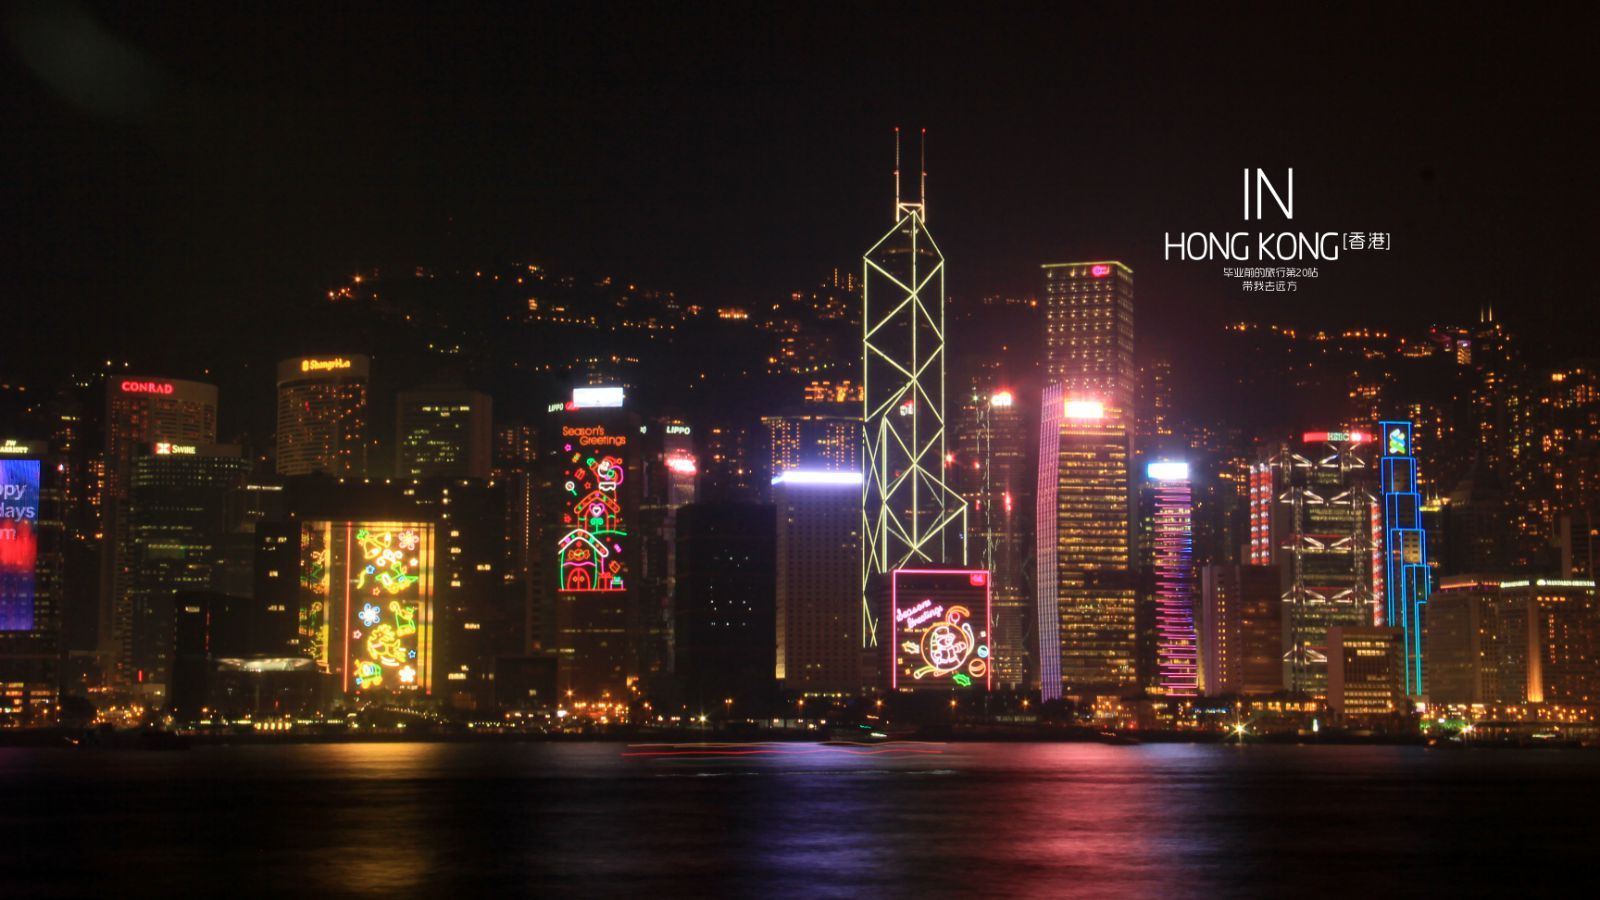 香港夜景 堆糖 美图壁纸兴趣社区